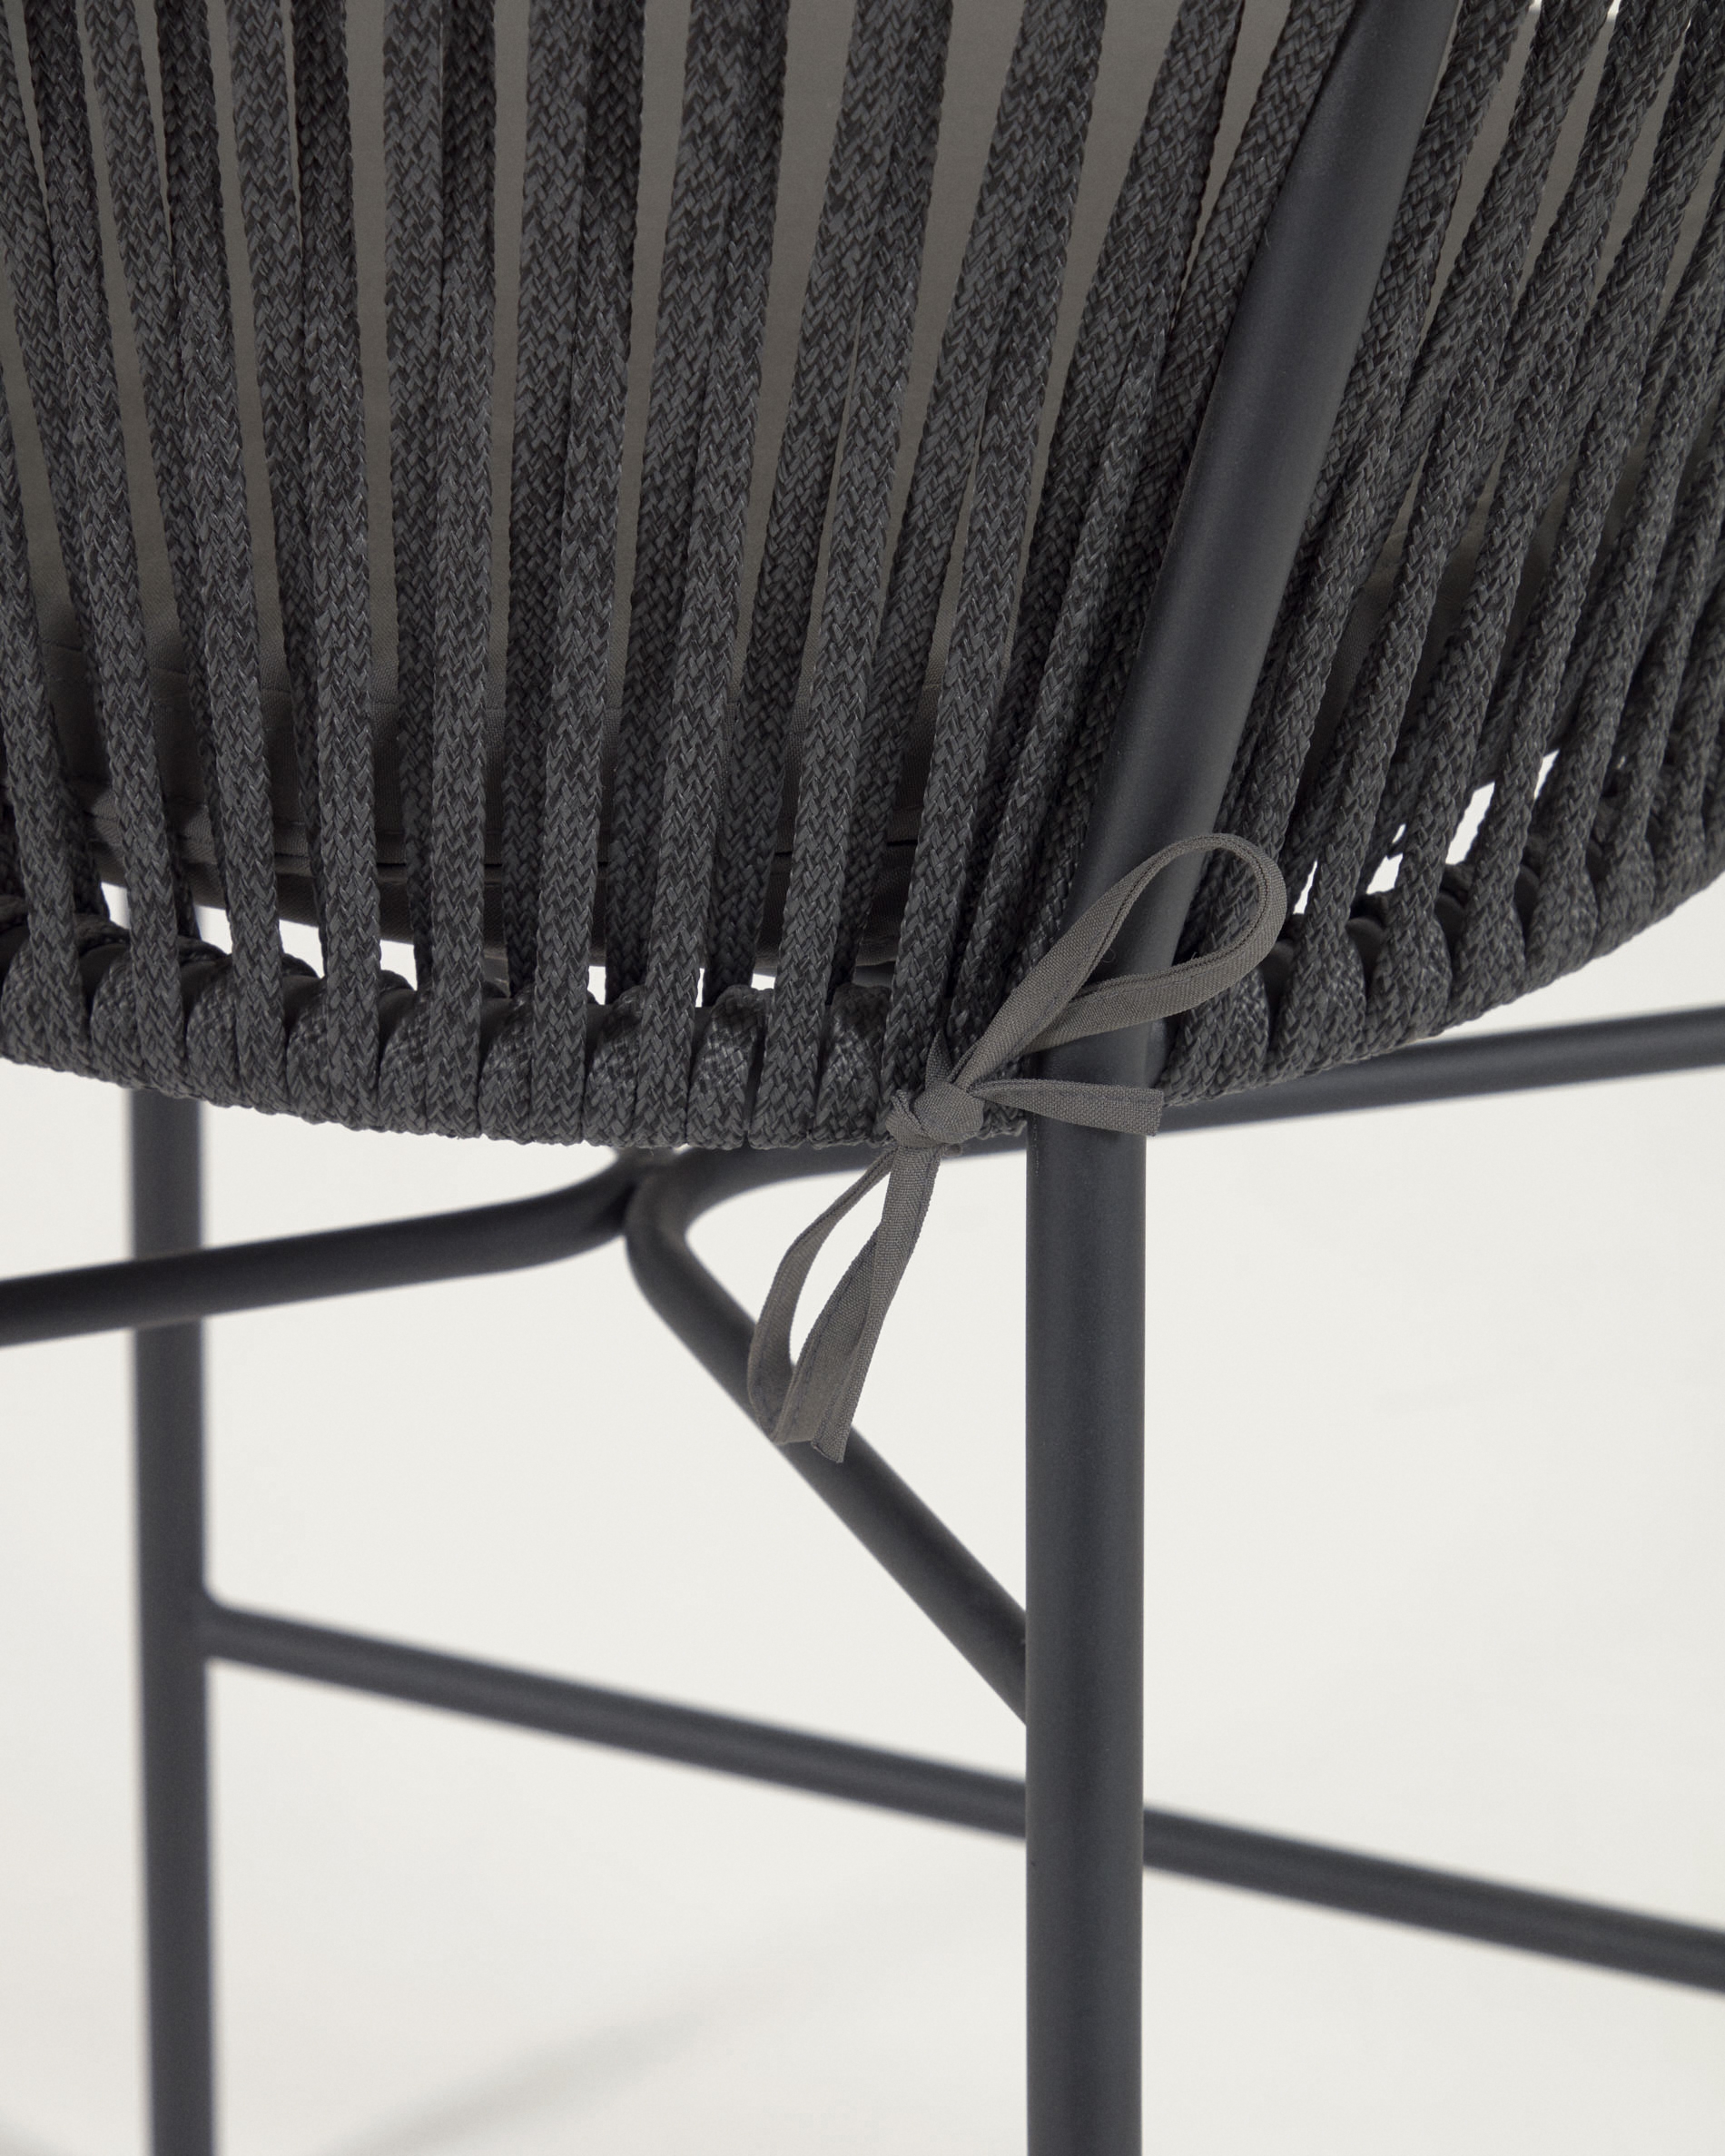 La Forma (ex Julia Grup) Веревочный барный стул Yanet черного цвета 80 см